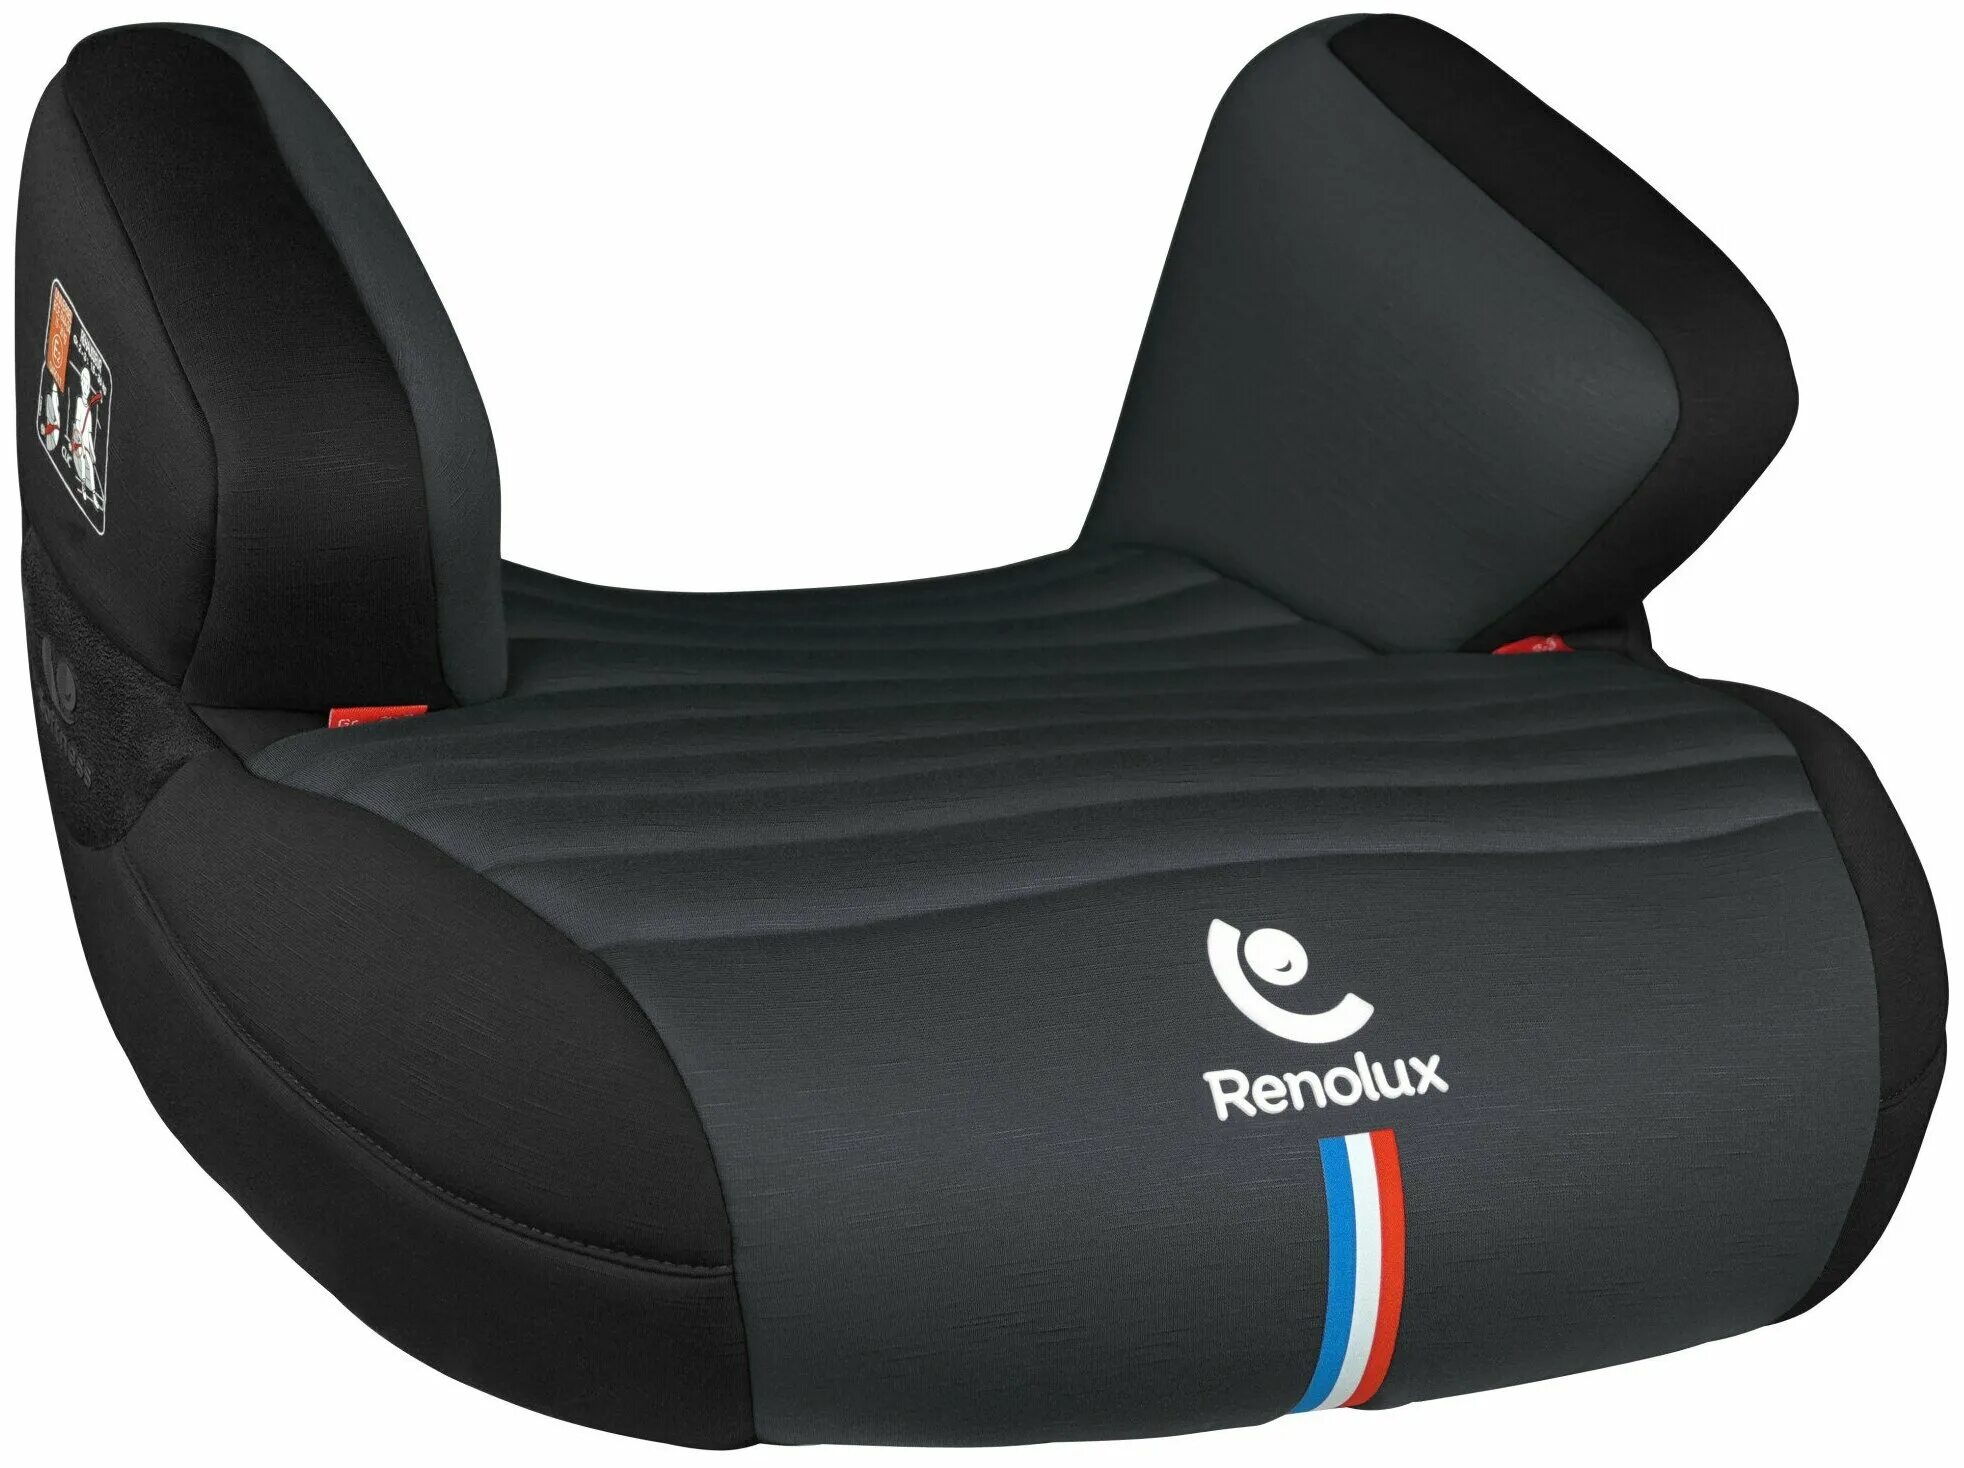 Рейтинг бустеров для детей. Бустер группа 2/3 (15-36 кг) Renolux Jet. Бустер Renolux Jet. Бустер Renolux Jet 2020 Ocean. Автокресло группа 2/3 (15-36 кг) Renolux STEPFIX 2-3.